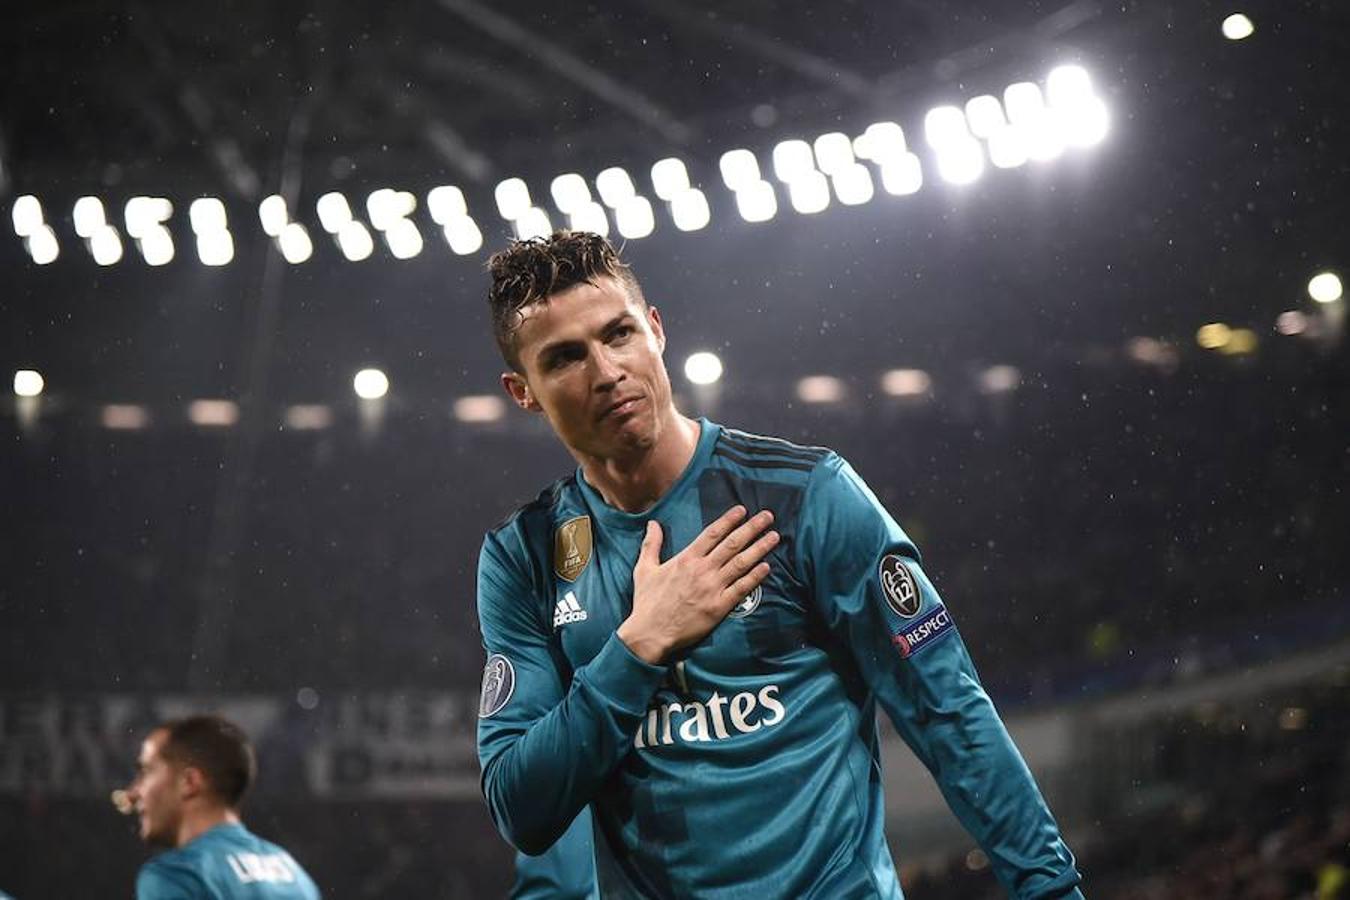 La estrella portuguesa ha jugado durante nueve años en el Real Madrid